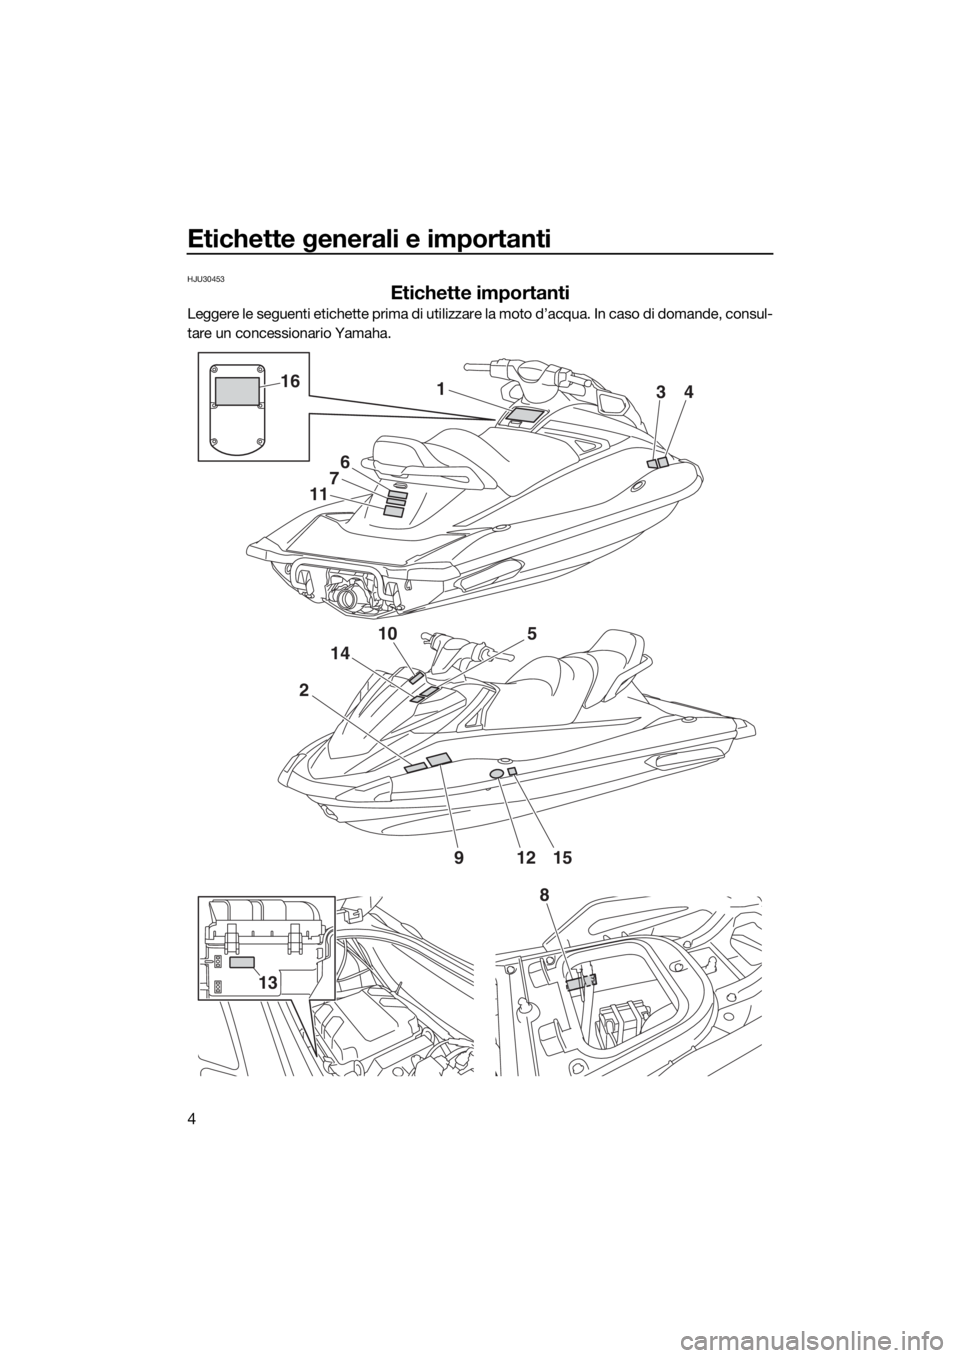 YAMAHA VX 2018  Manuale duso (in Italian) Etichette generali e importanti
4
HJU30453
Etichette importanti
Leggere le seguenti etichette prima di utilizzare la moto d’acqua. In caso di domande, consul-
tare un concessionario Yamaha.
2
10
14
